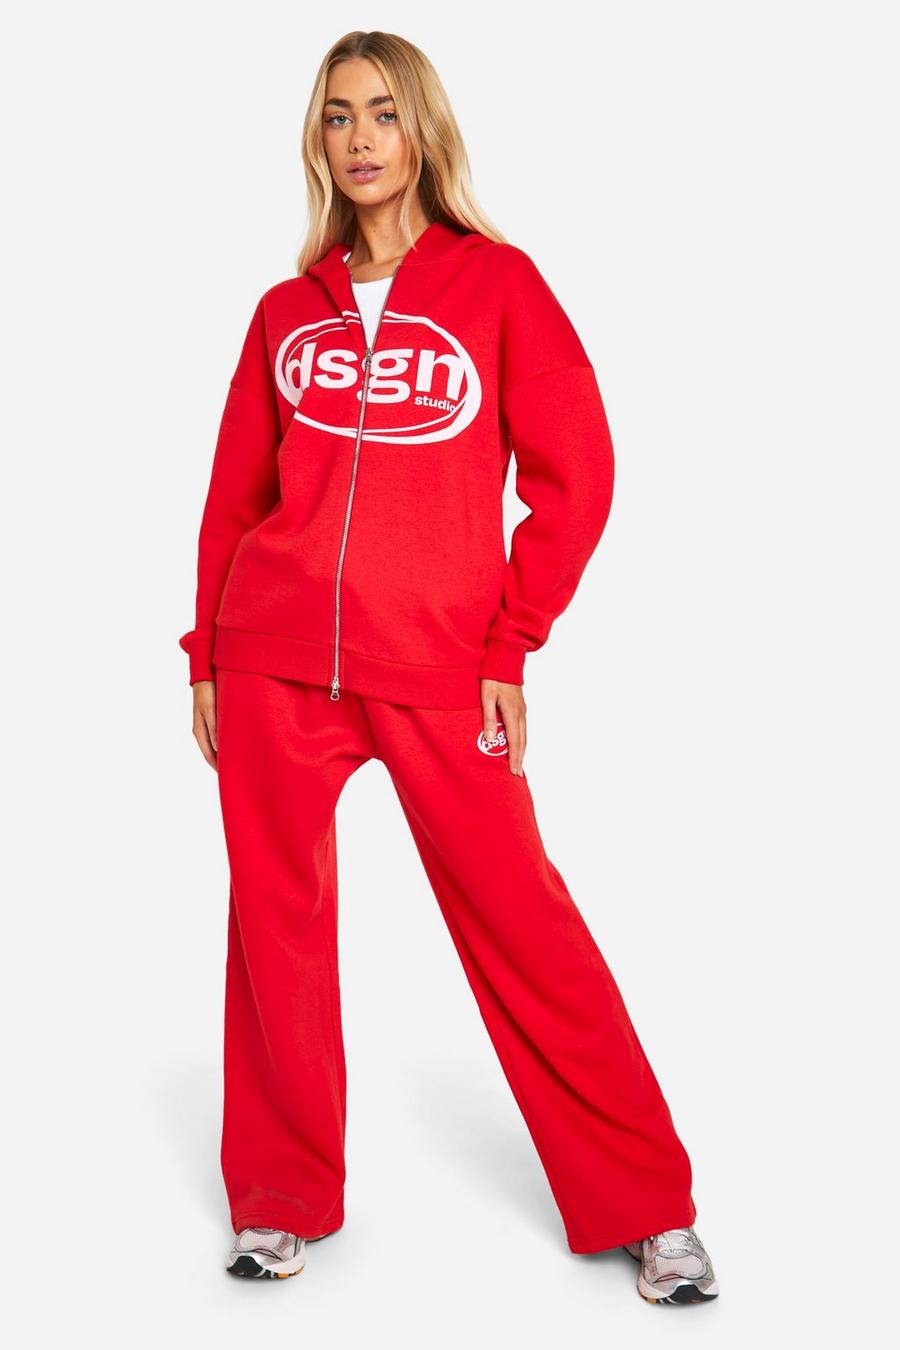 Pantalón deportivo oversize con botamanga y estampado Dsgn Studio ovalado, Red